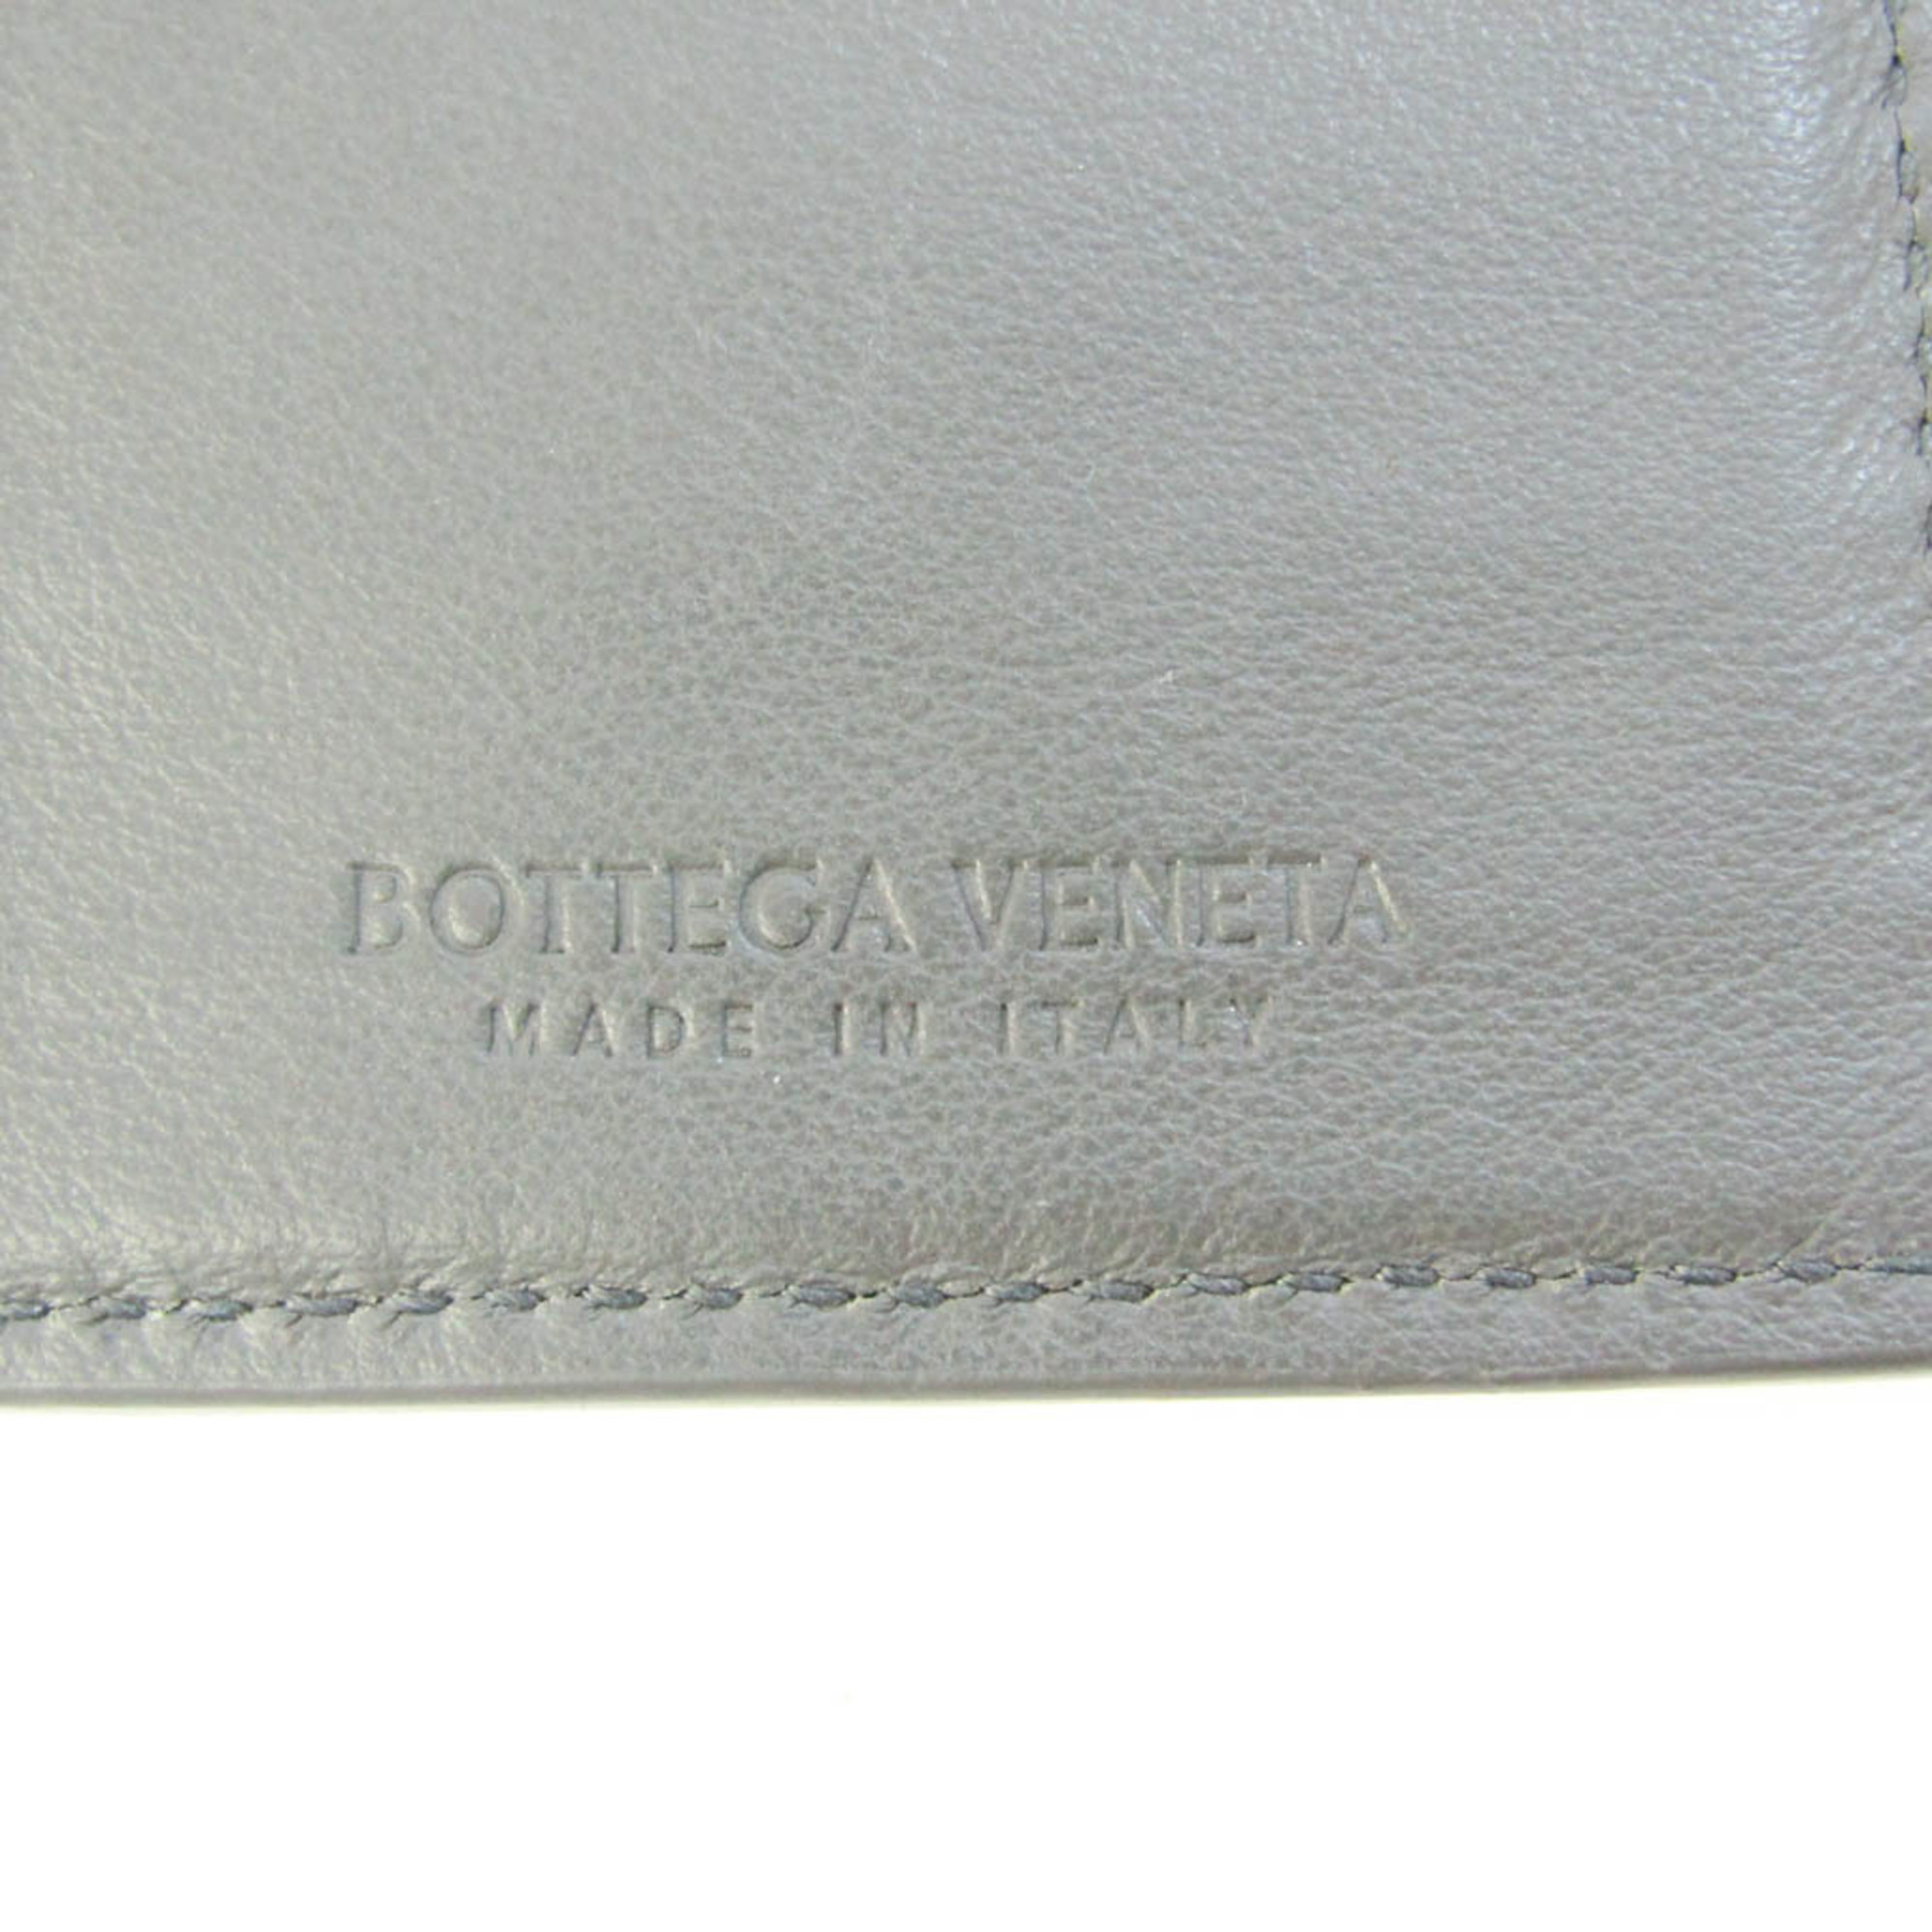 ボッテガ・ヴェネタ(Bottega Veneta) イントレチャート レディース,メンズ レザー 長札入れ（二つ折り） グレー